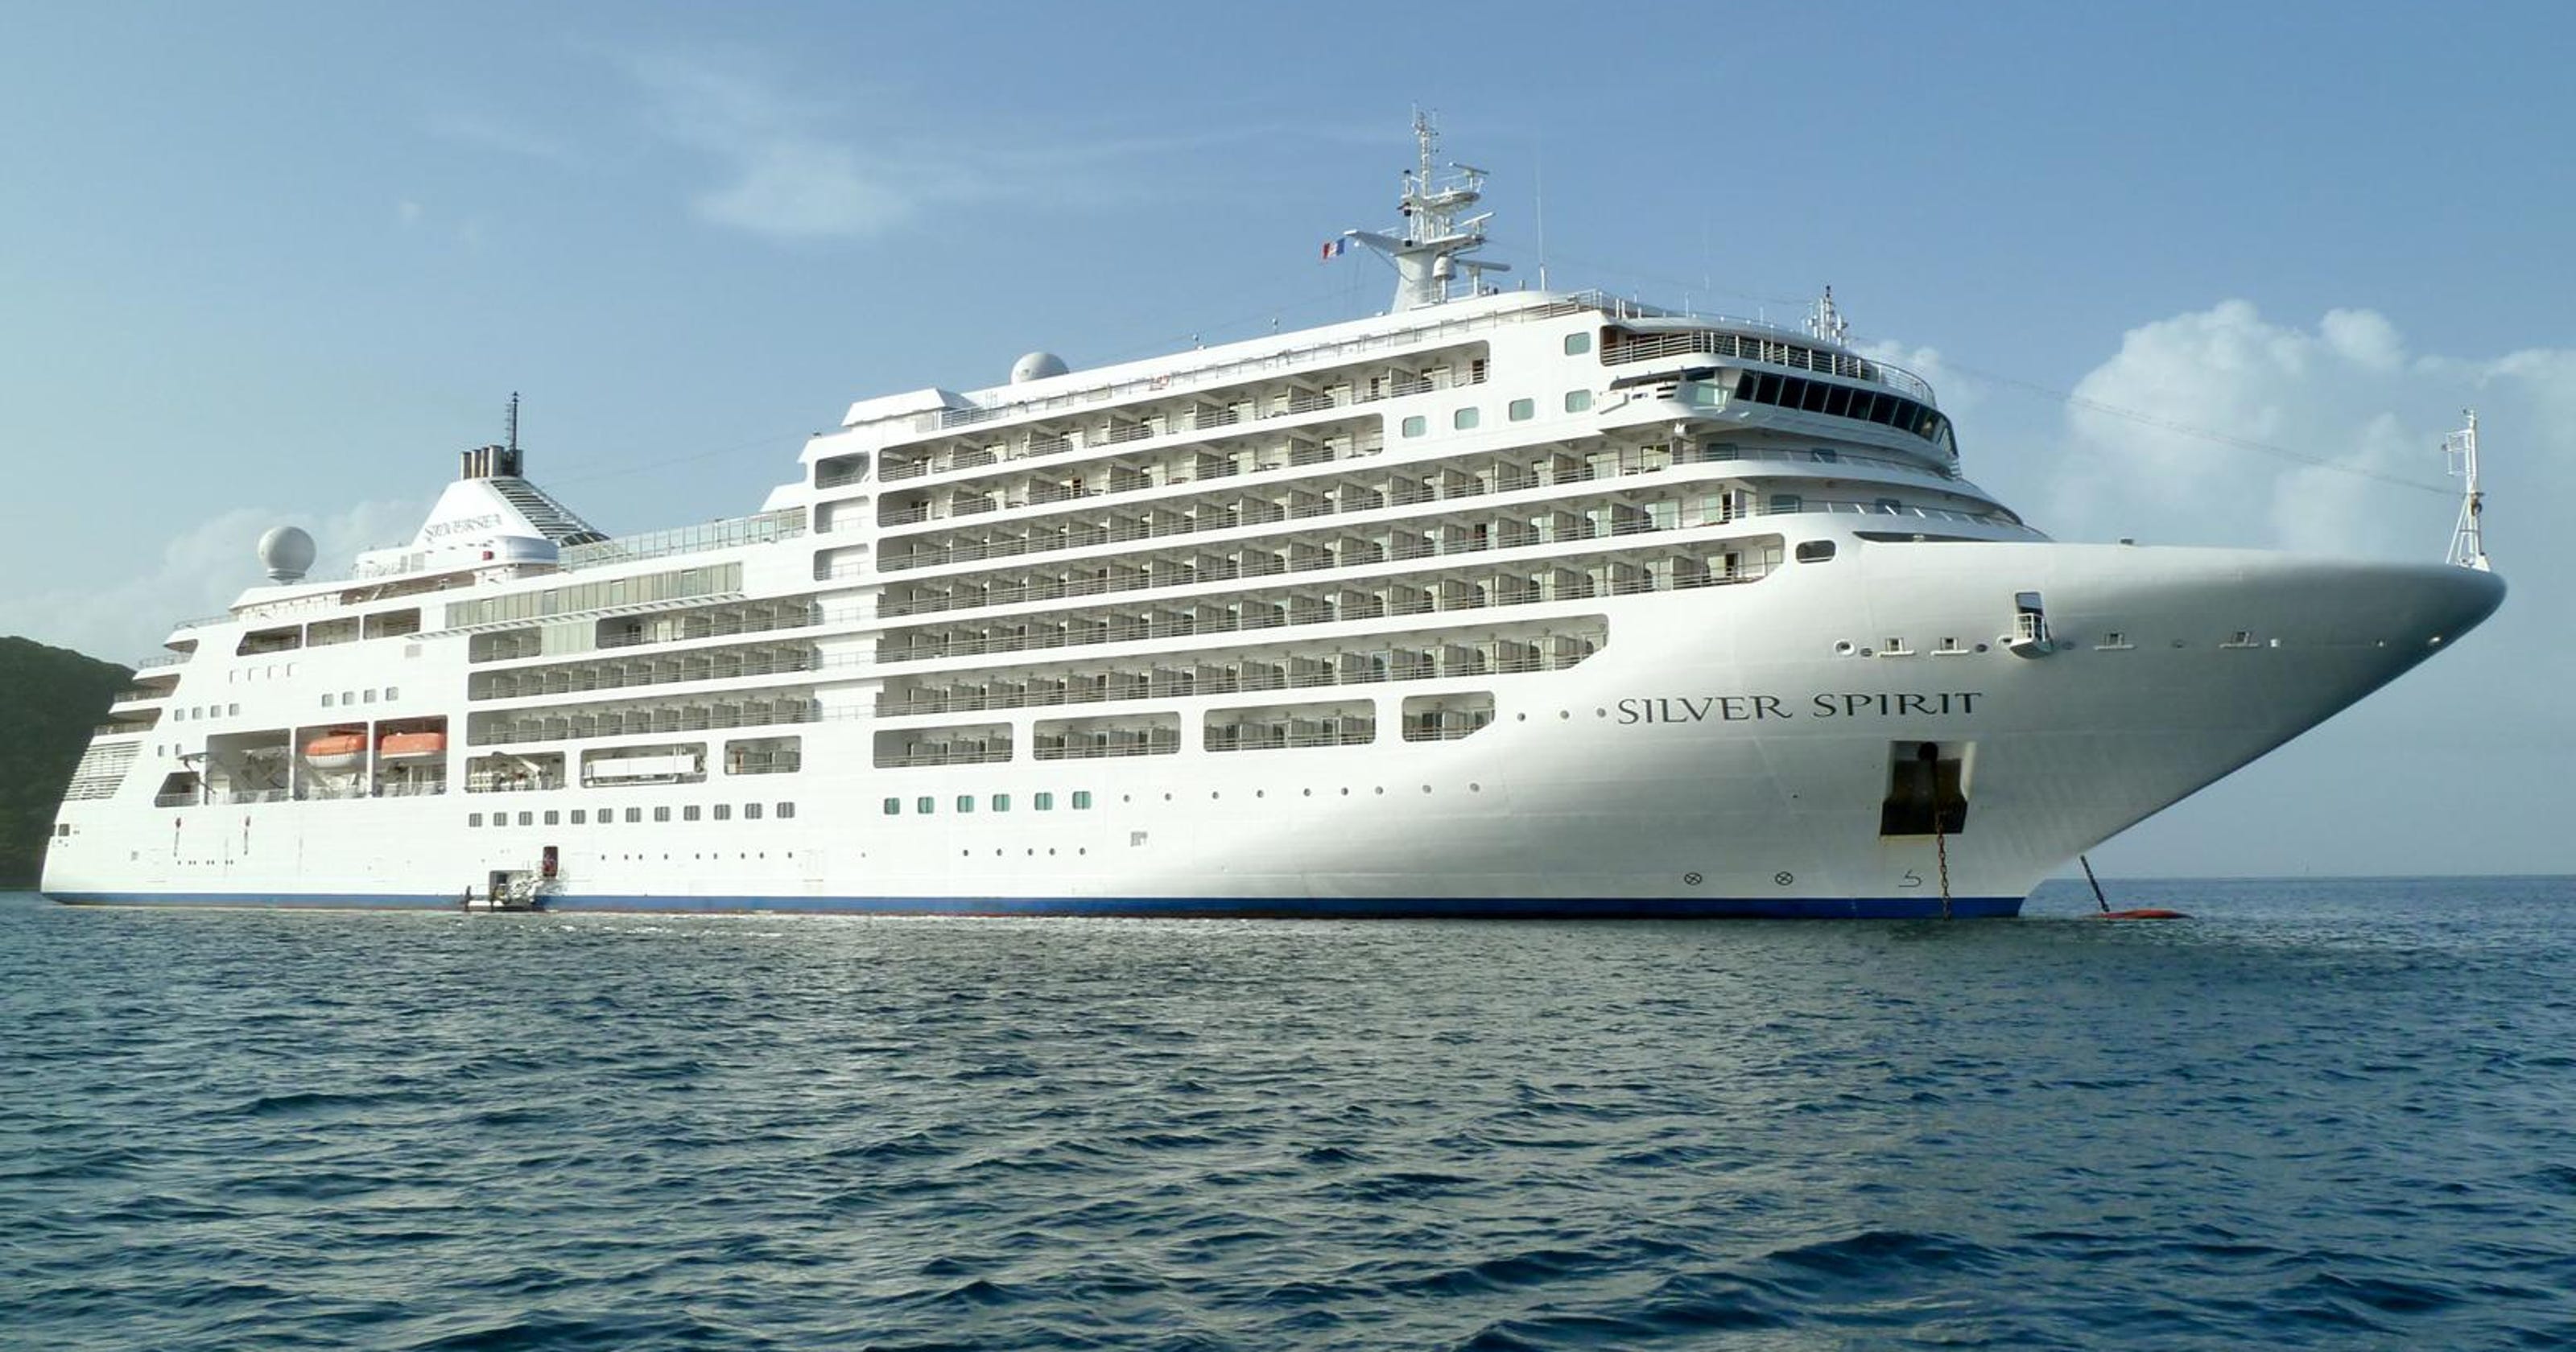 Cruise ship review: Silversea Cruises' Silver Spirit